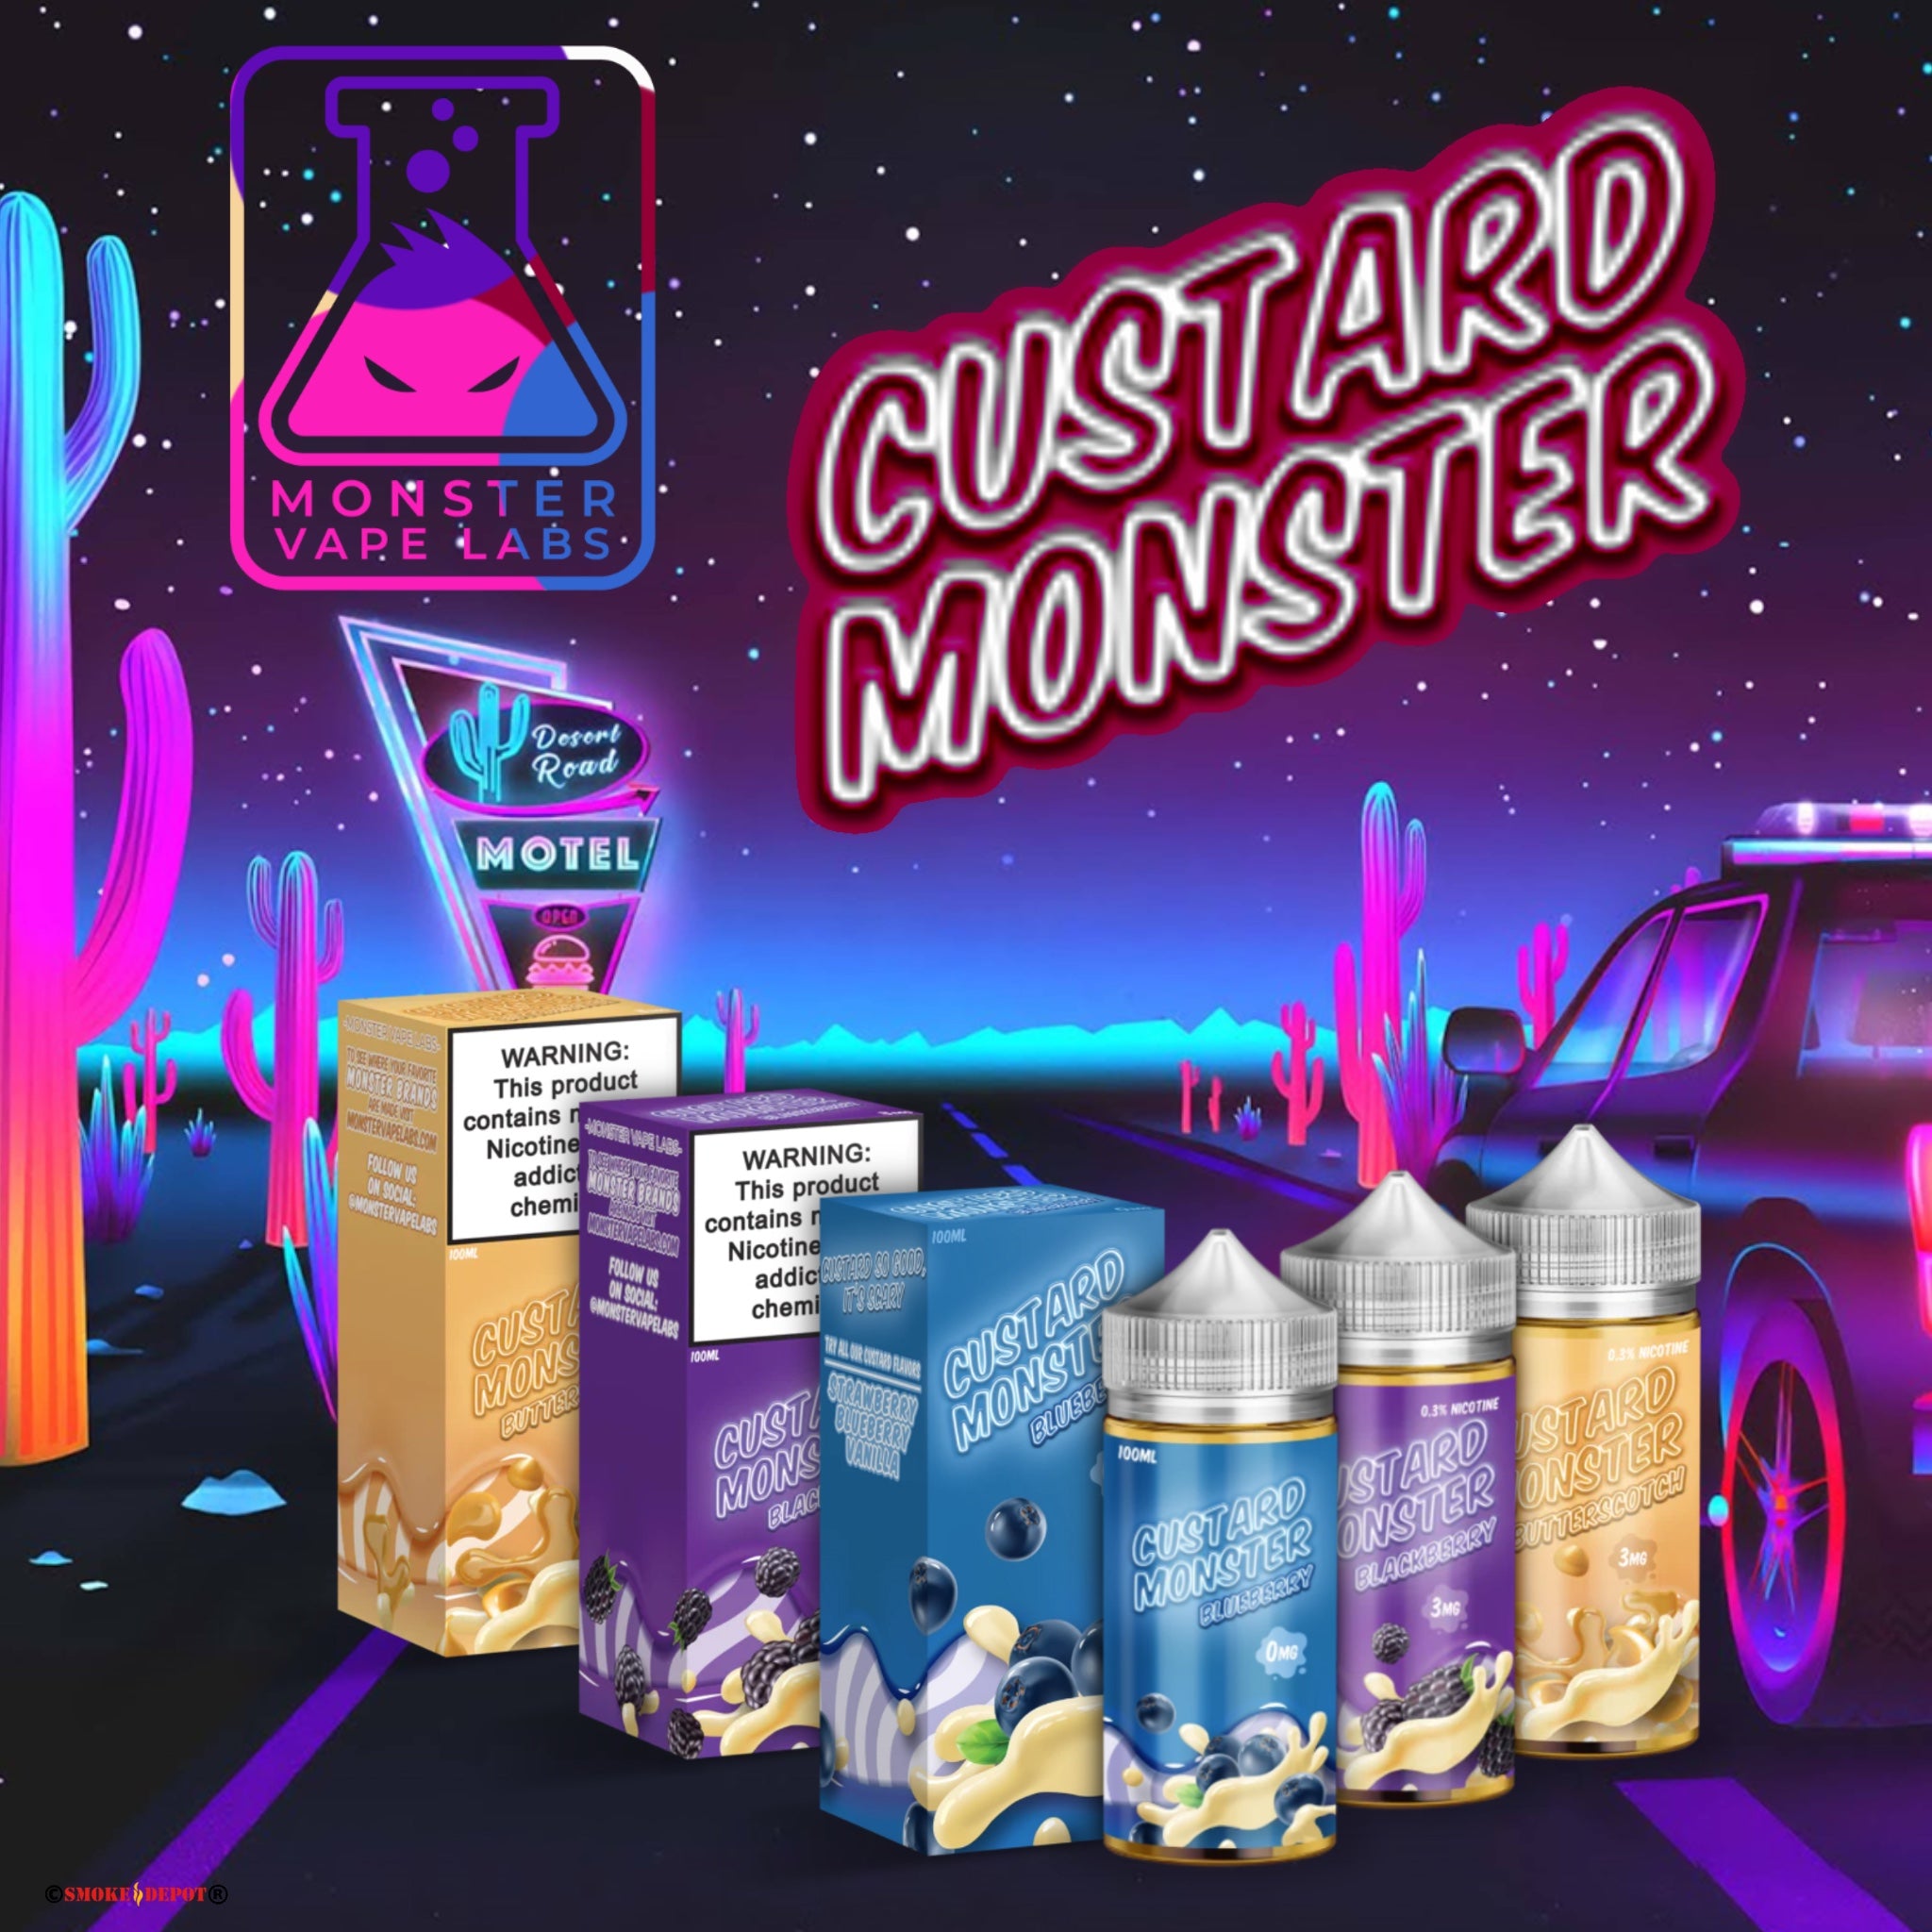 MONSTER Custard Monster E-Liquids